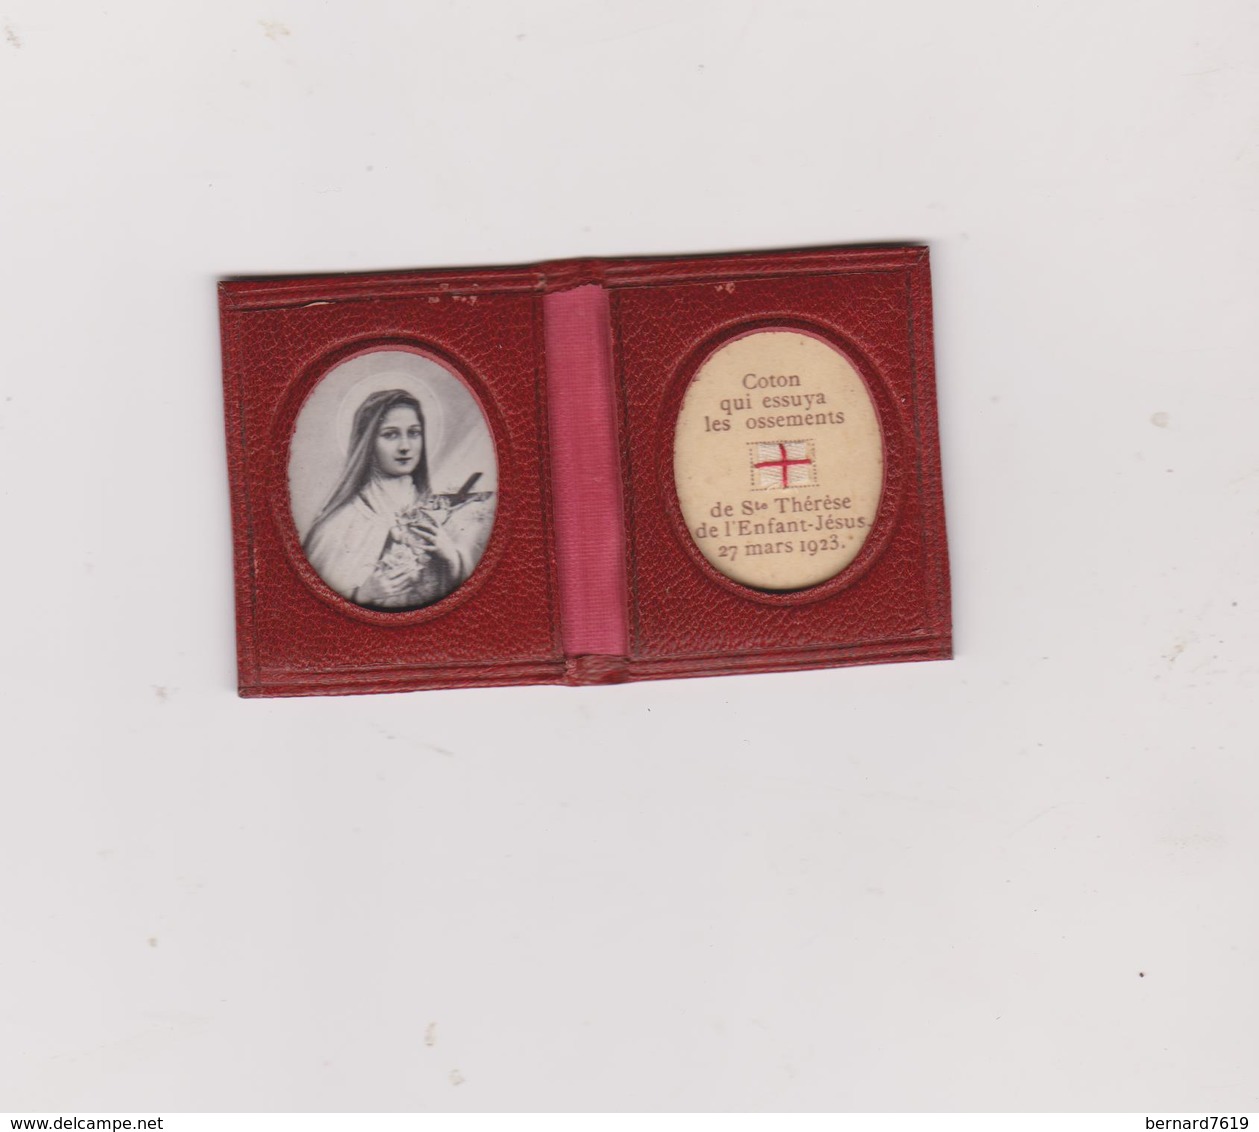 Livret  Religieux   Sainte Therese De L'enfant Jesus Coton Qui Essuya  Les Ossements  27 Mars 1923 - Religion & Esotérisme